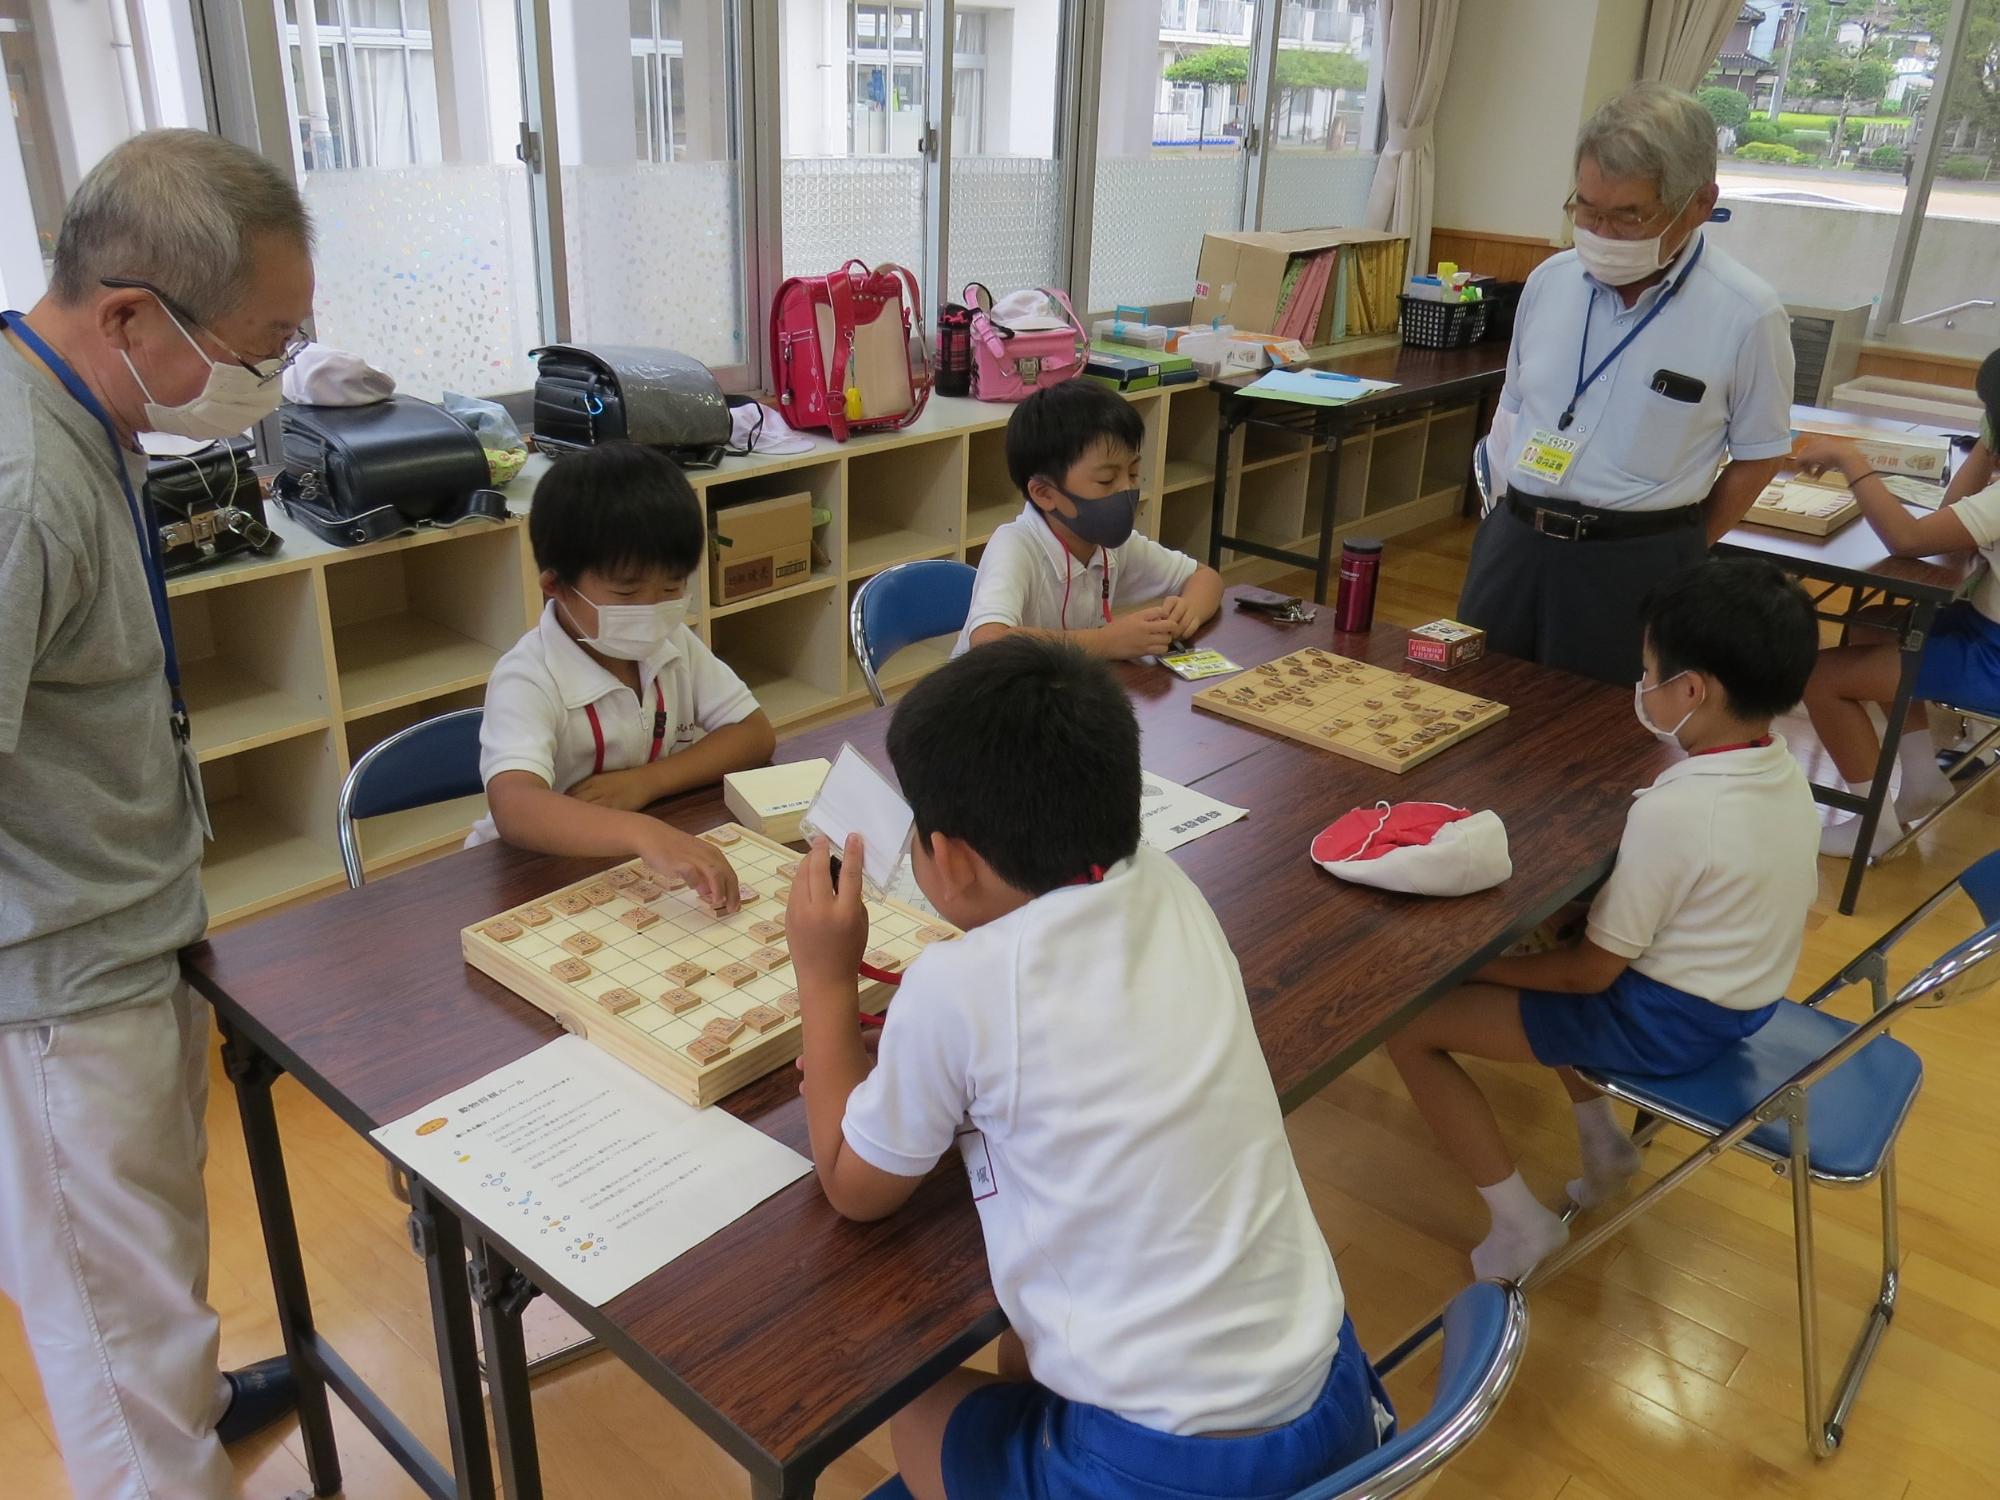 対戦相手をみつけて、将棋をしてる子どもたちと指導してくださるボランティアさんの写真